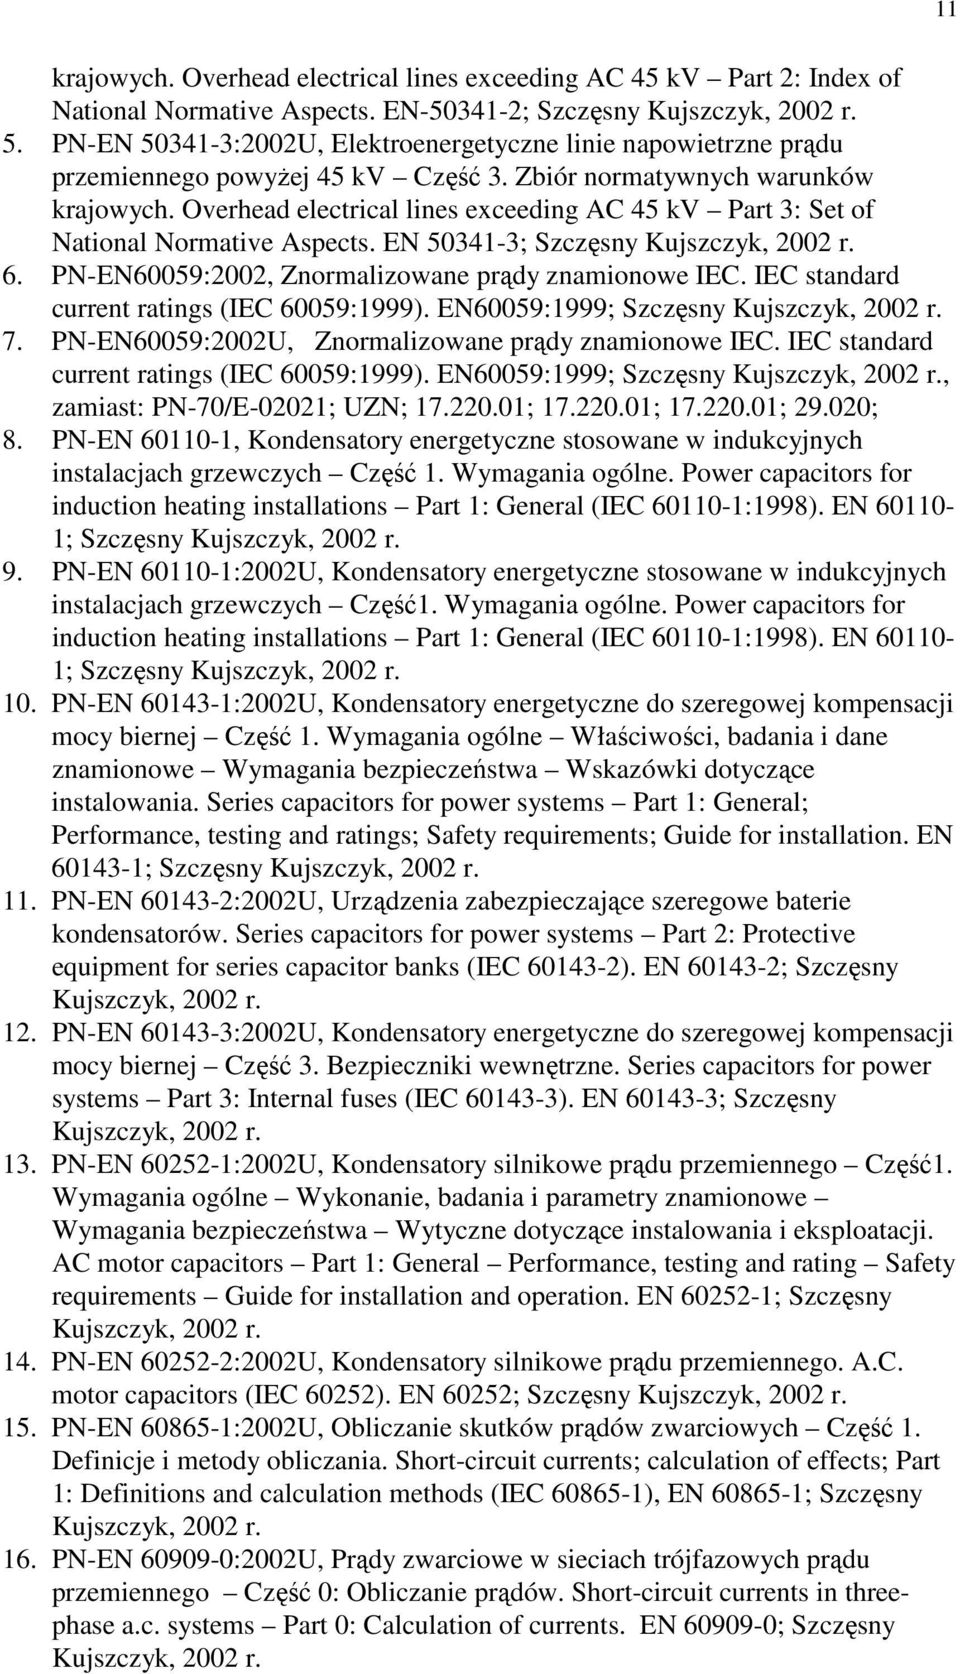 Overhead electrical lines exceeding AC 45 kv Part 3: Set of National Normative Aspects. EN 50341-3; Szczęsny Kujszczyk, 2002 r. 6. PN-EN60059:2002, Znormalizowane prądy znamionowe IEC.